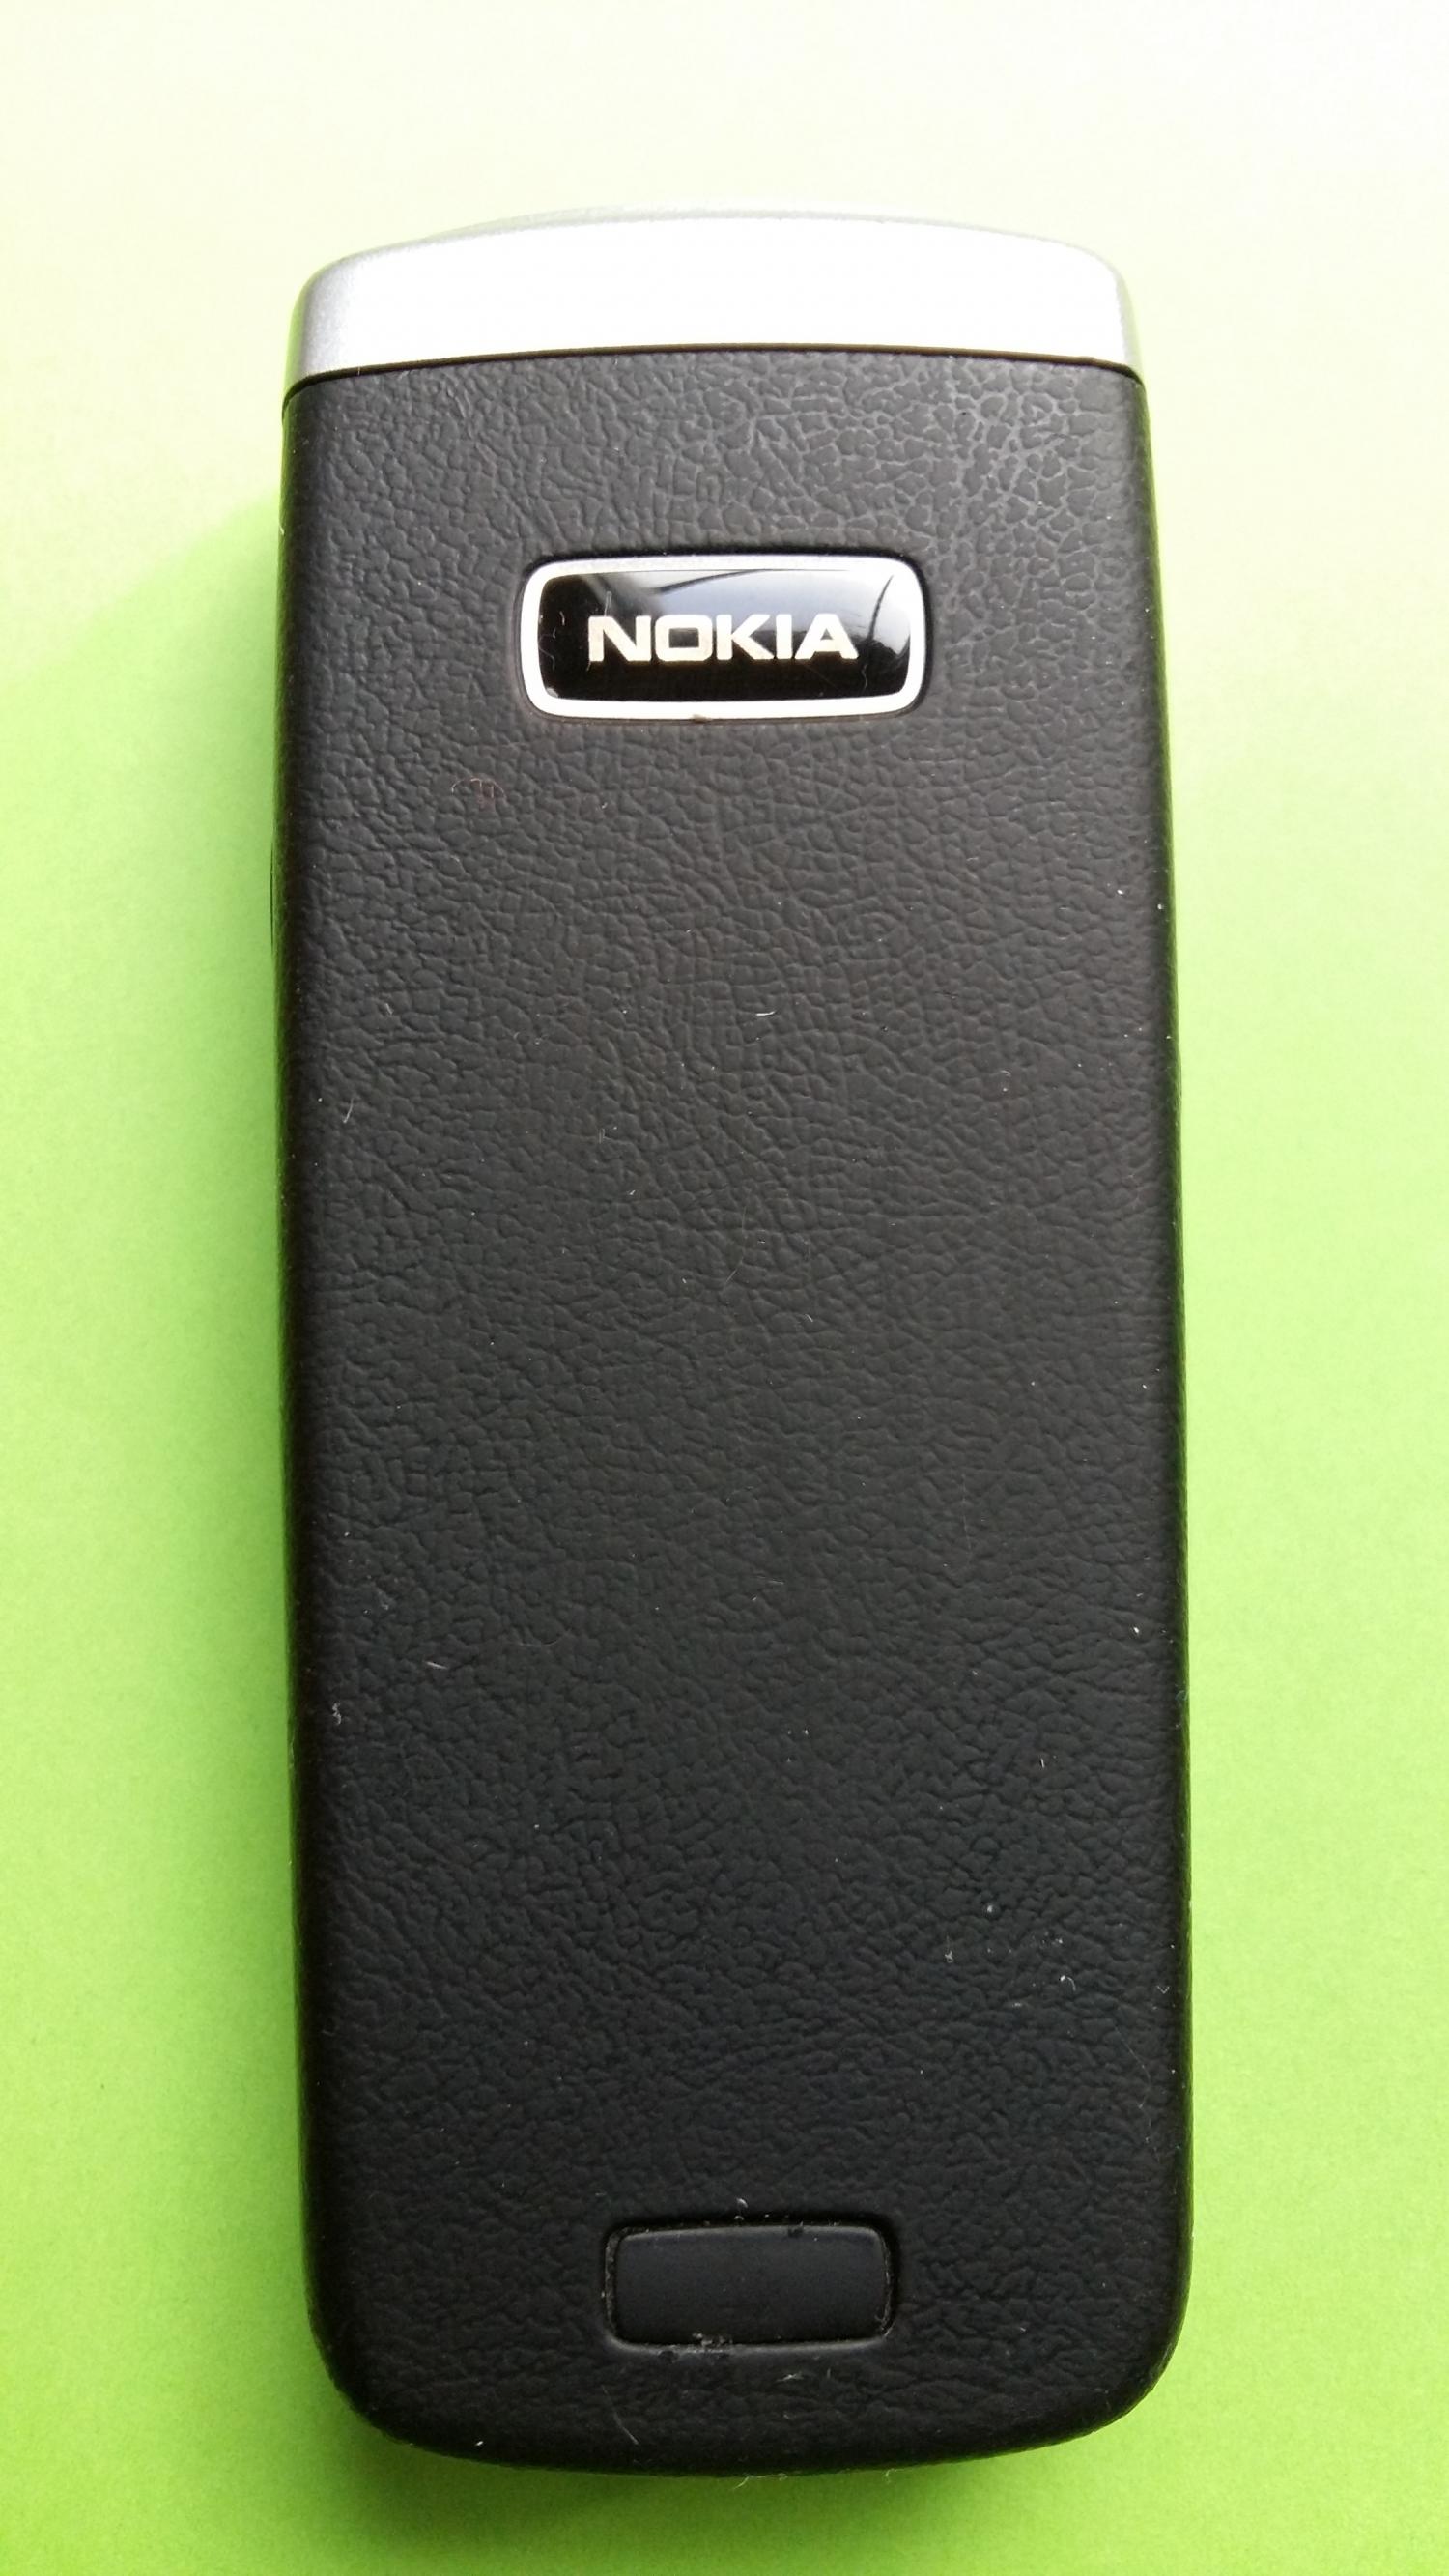 image-7307499-Nokia 6021 (1)2.jpg